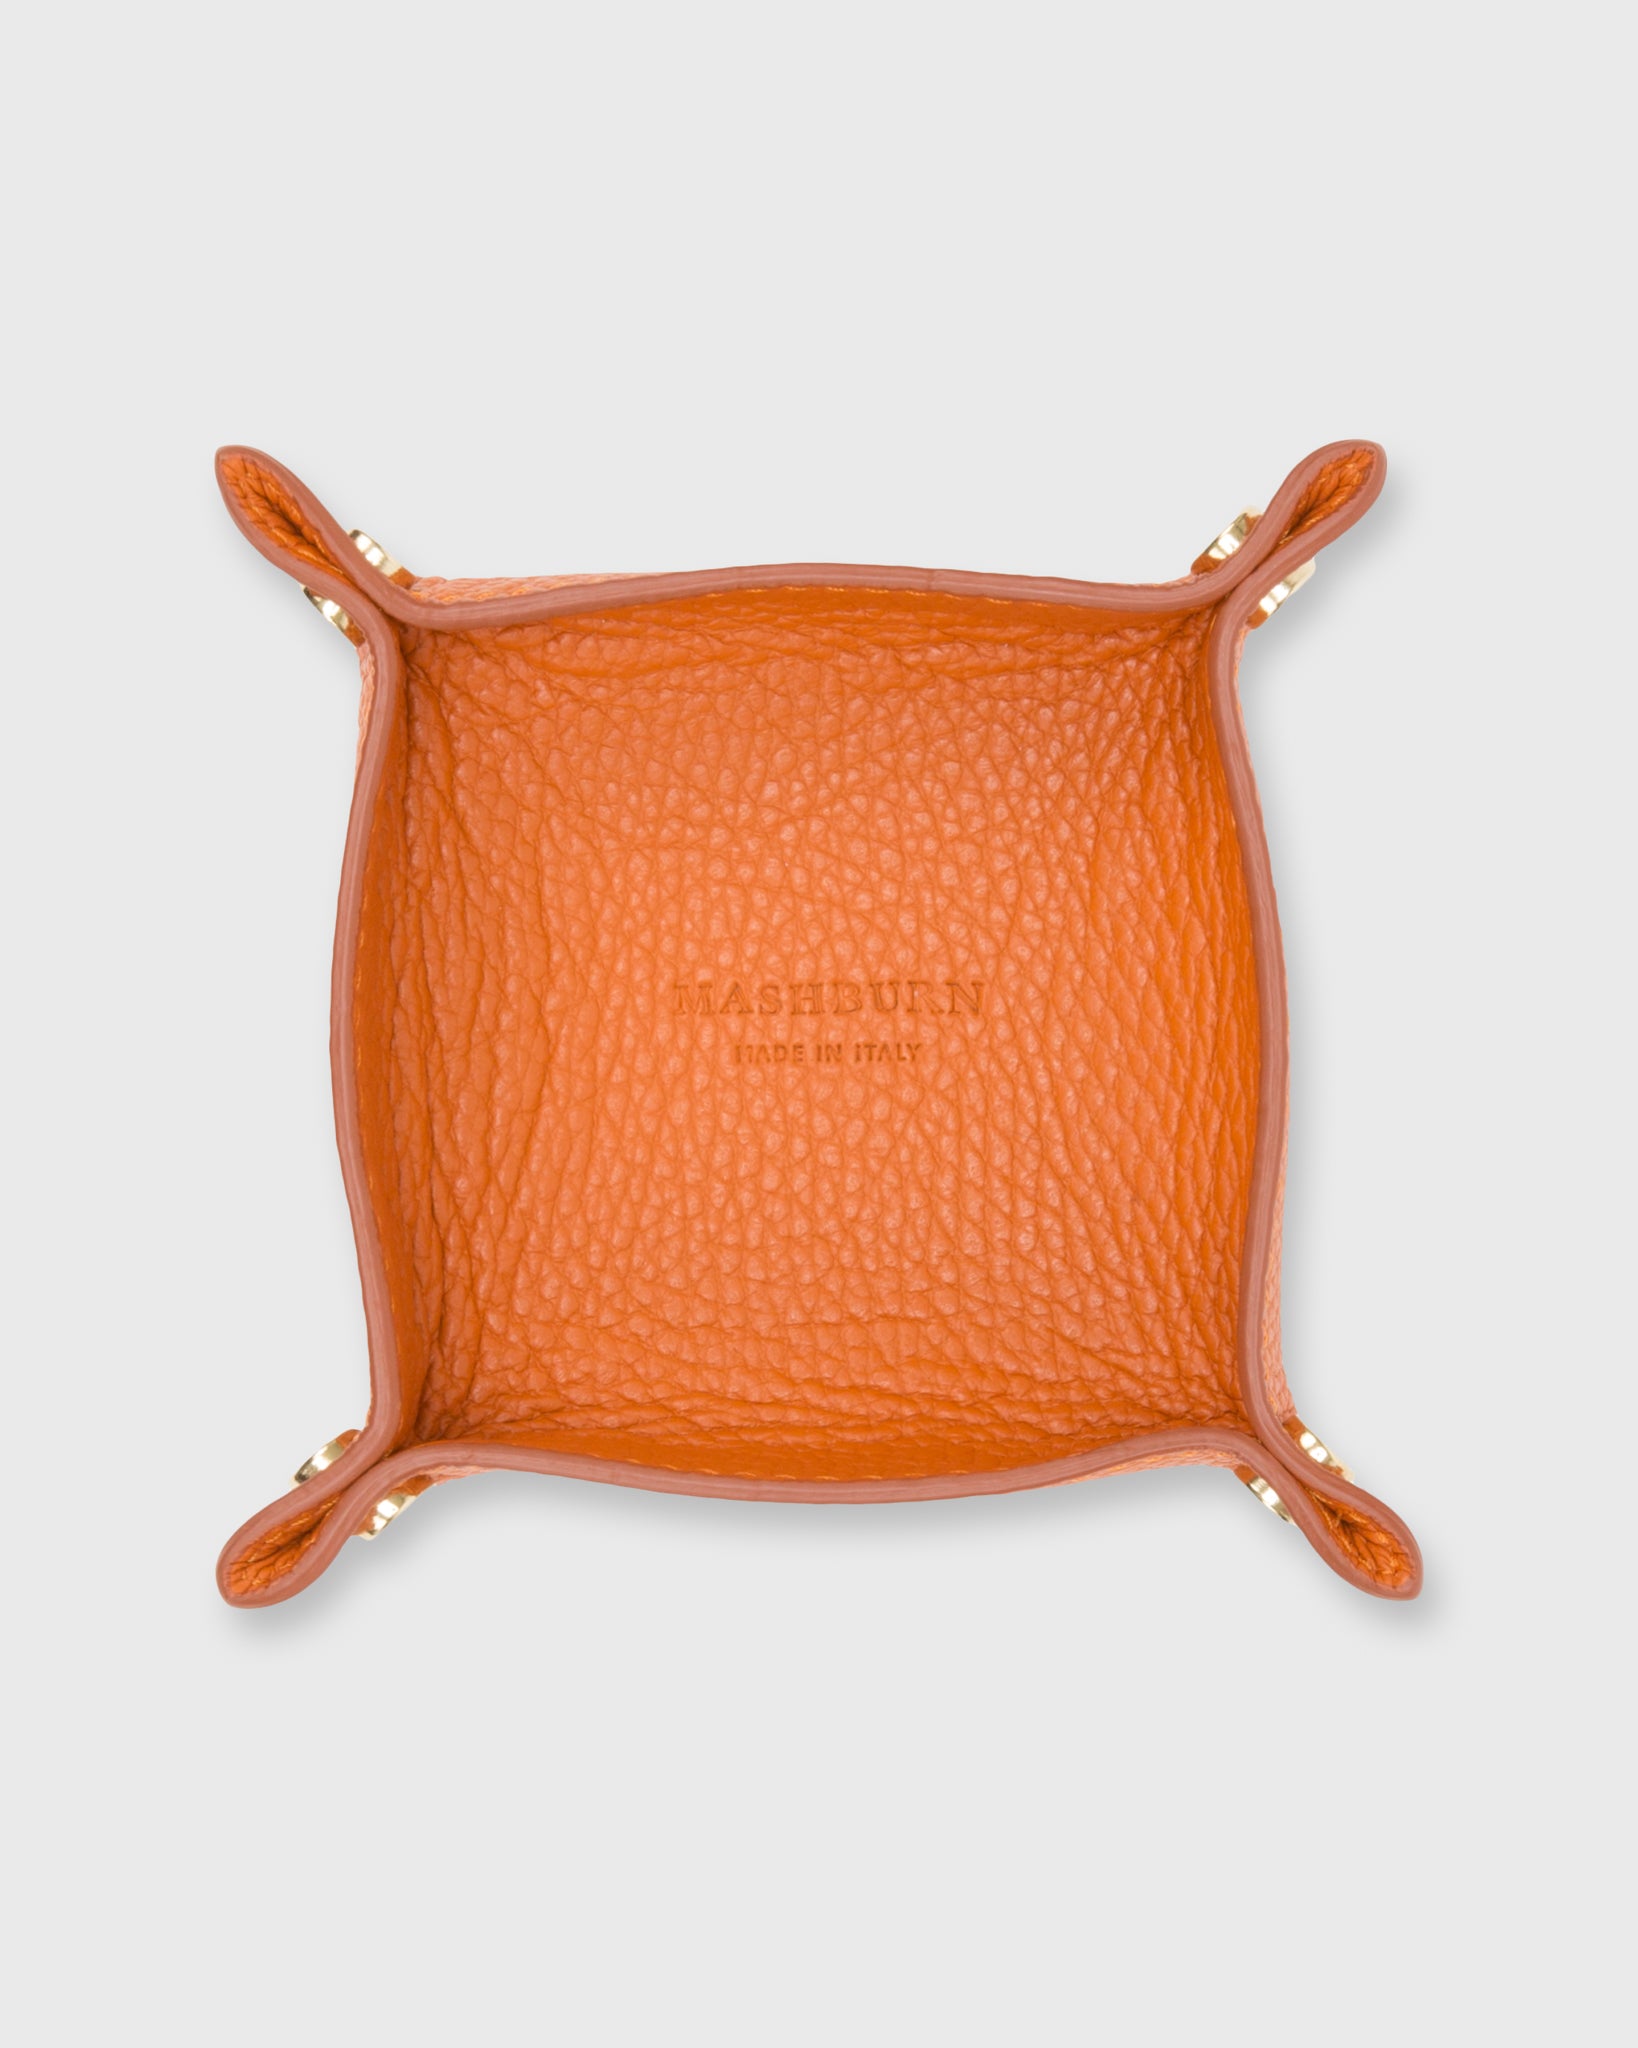 Soft Small Square Tray Orange Alce Leather